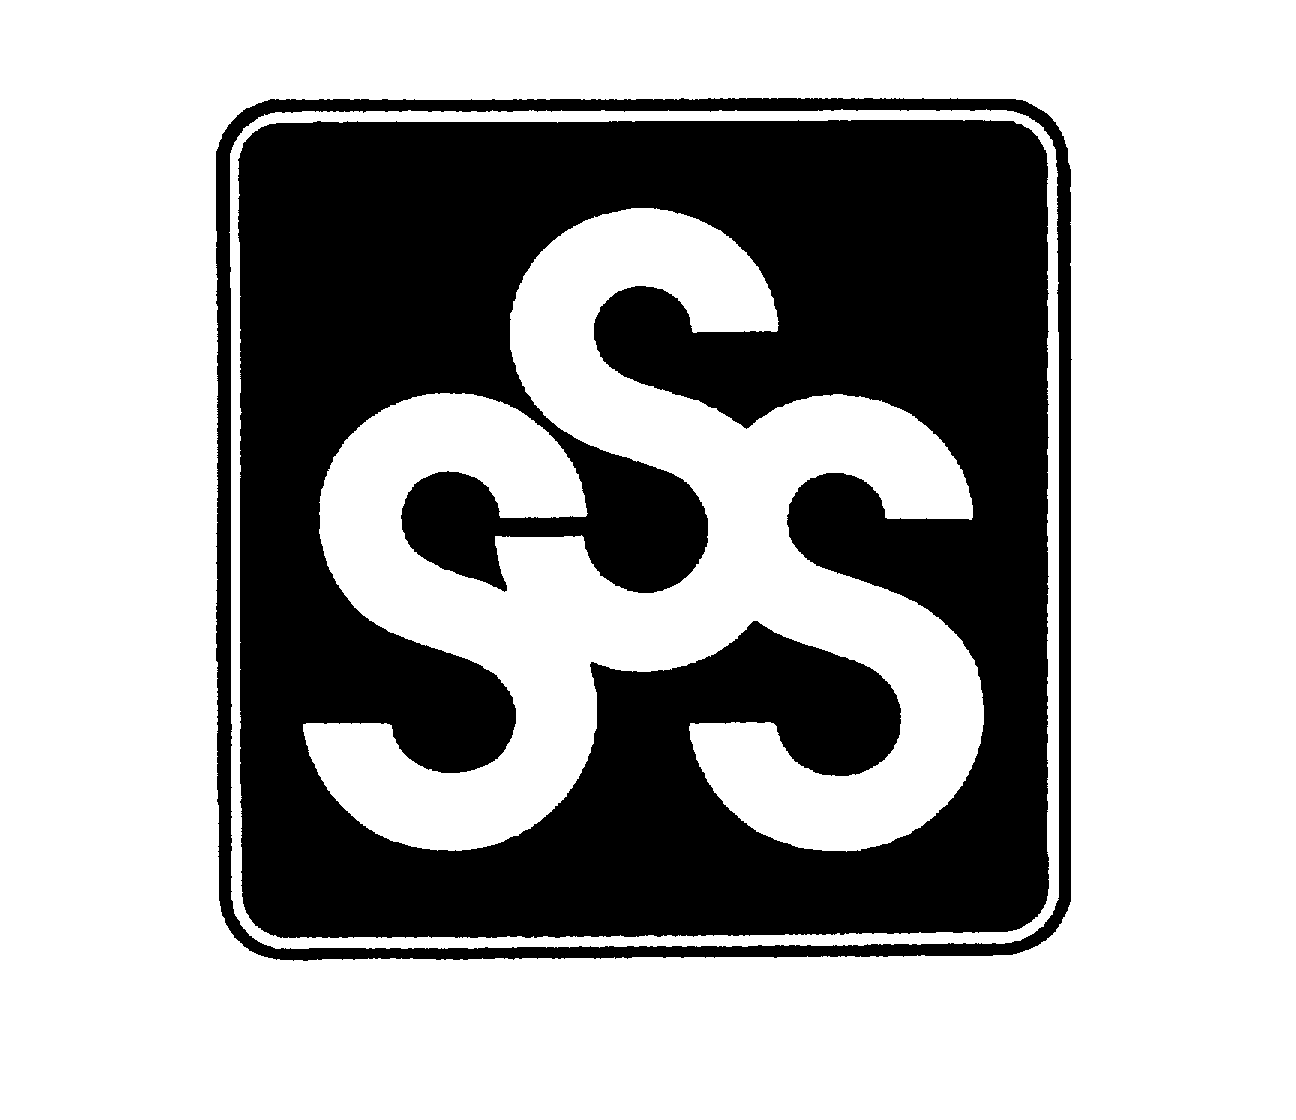  SSS